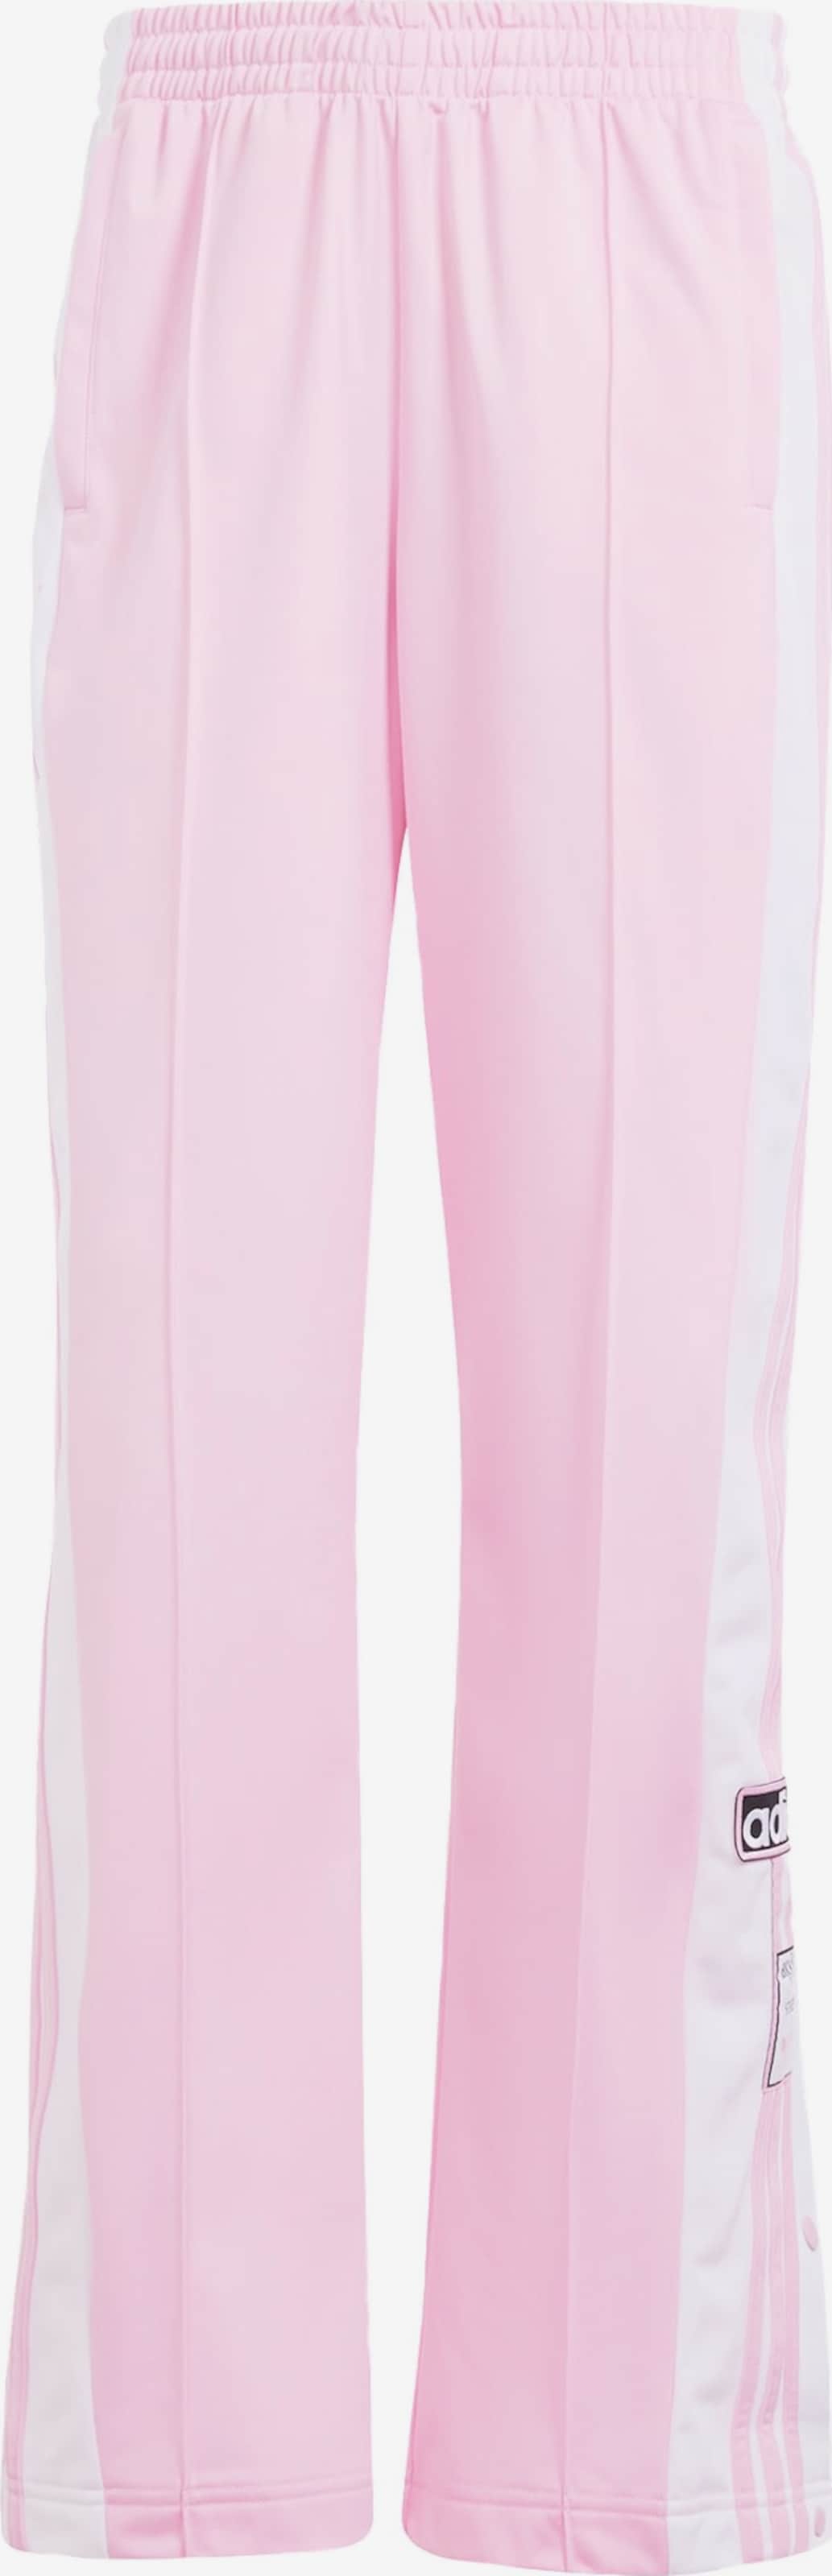 adidas Adicolor Adibreak Pants - Pink